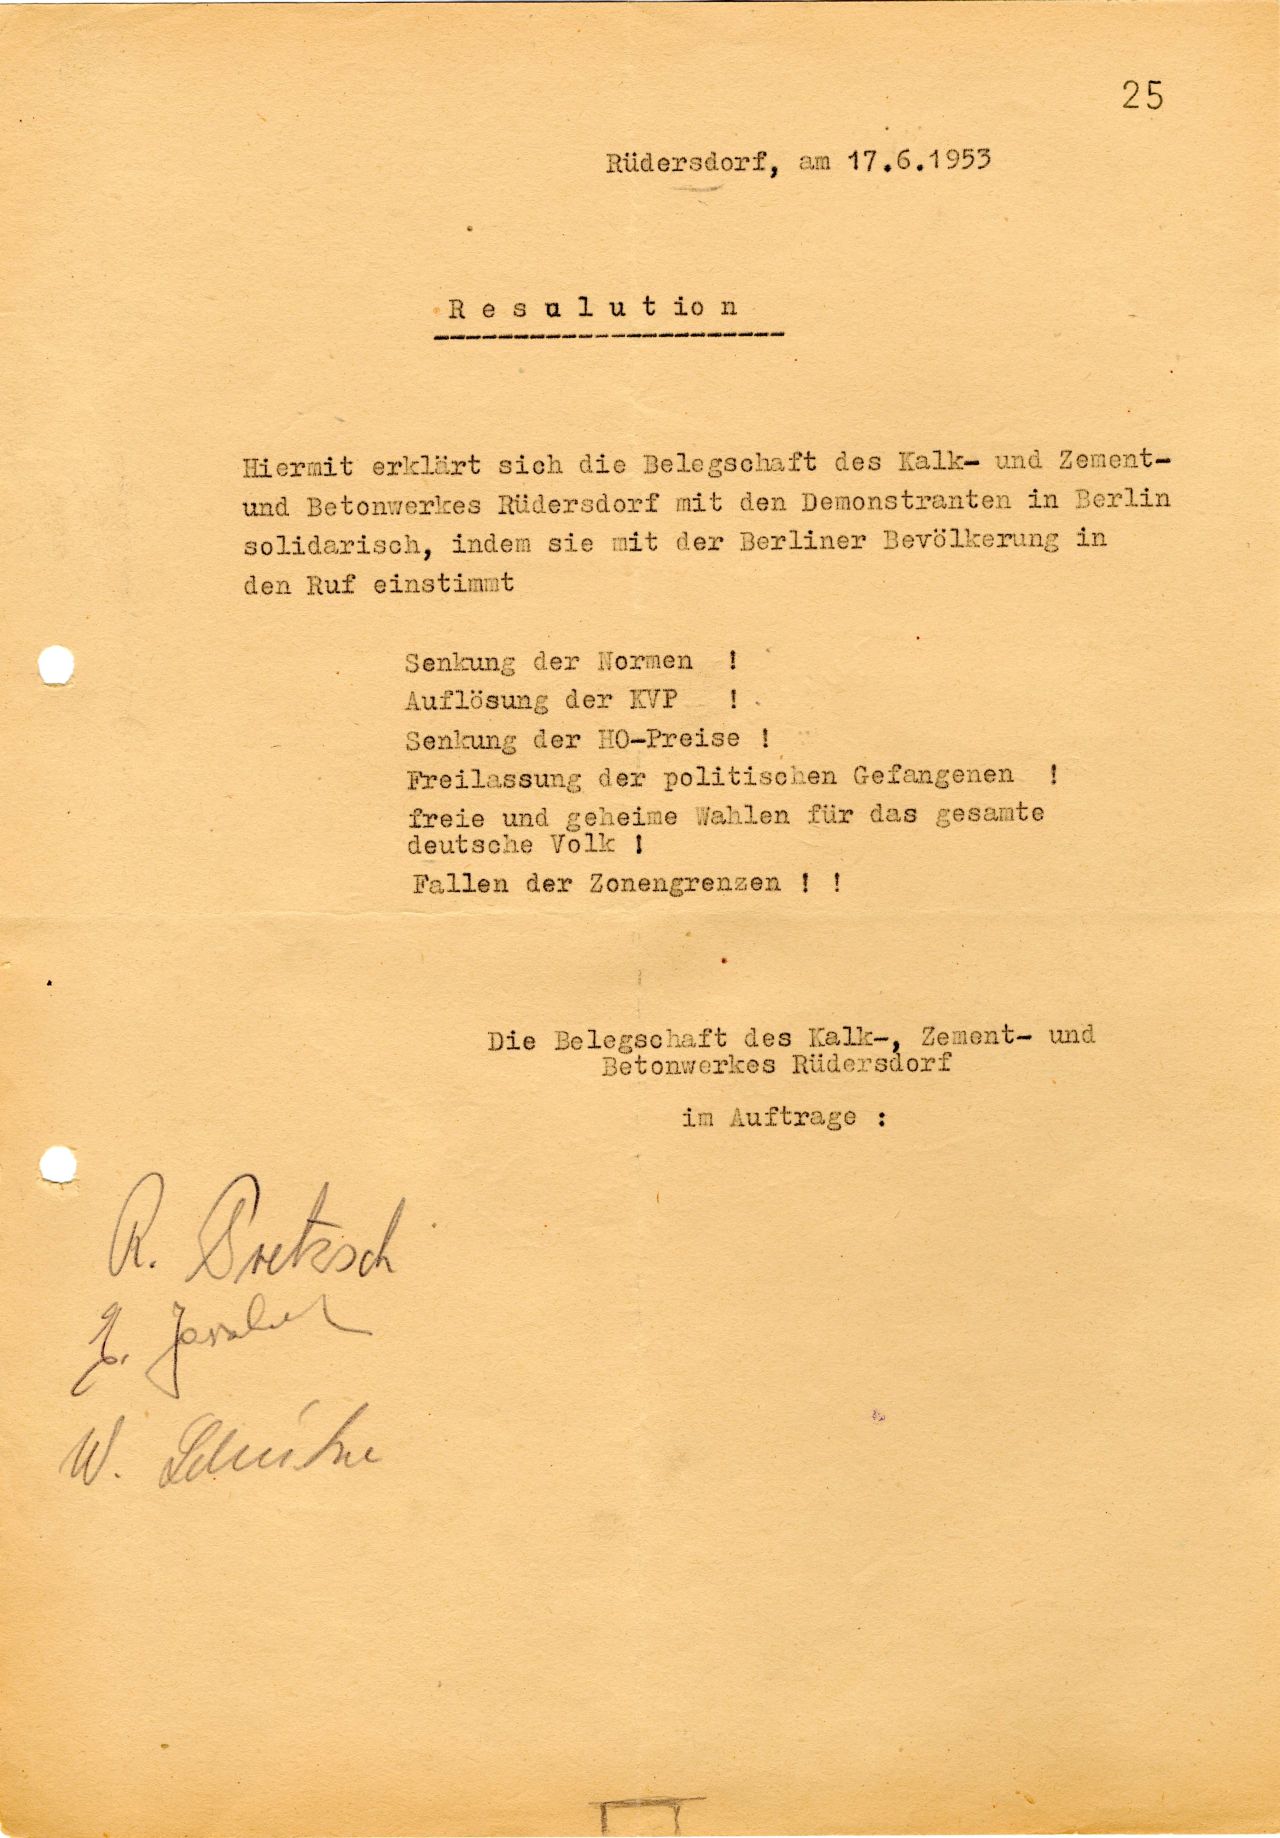 In ihrer Resolution vom 17. Juni 1953 erklärt sich die Belegschaft des Kalk- und Zement- und Betonwerkes in Rüderdorf mit den Demonstranten solidarisch. 